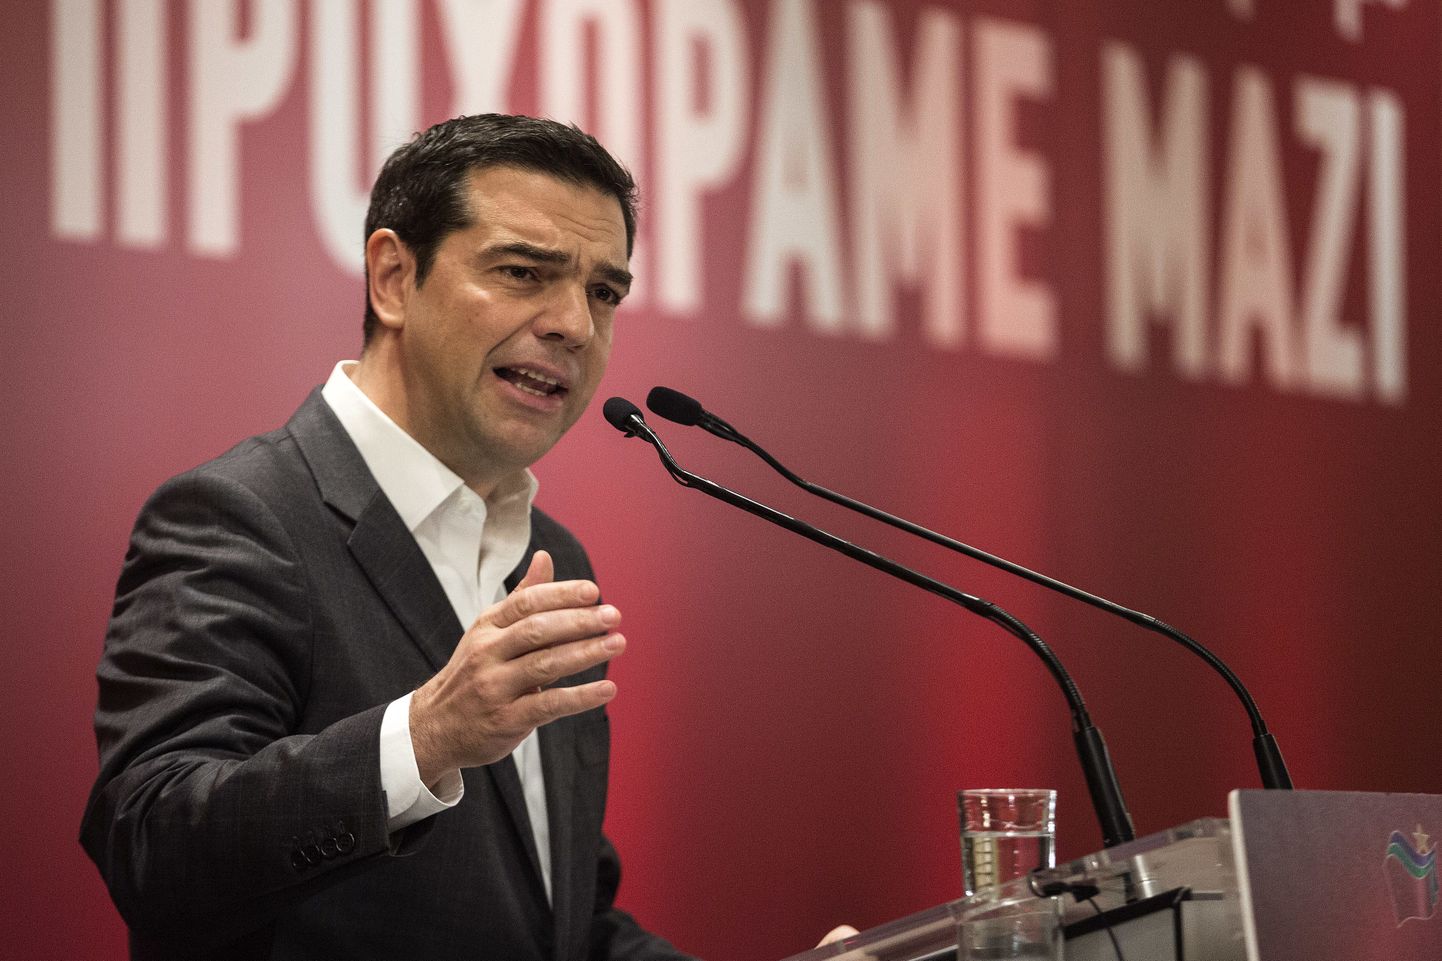 Kreeka peaminister Alexis Tsipras oma erakonna kohtumisel kõnet pidamas